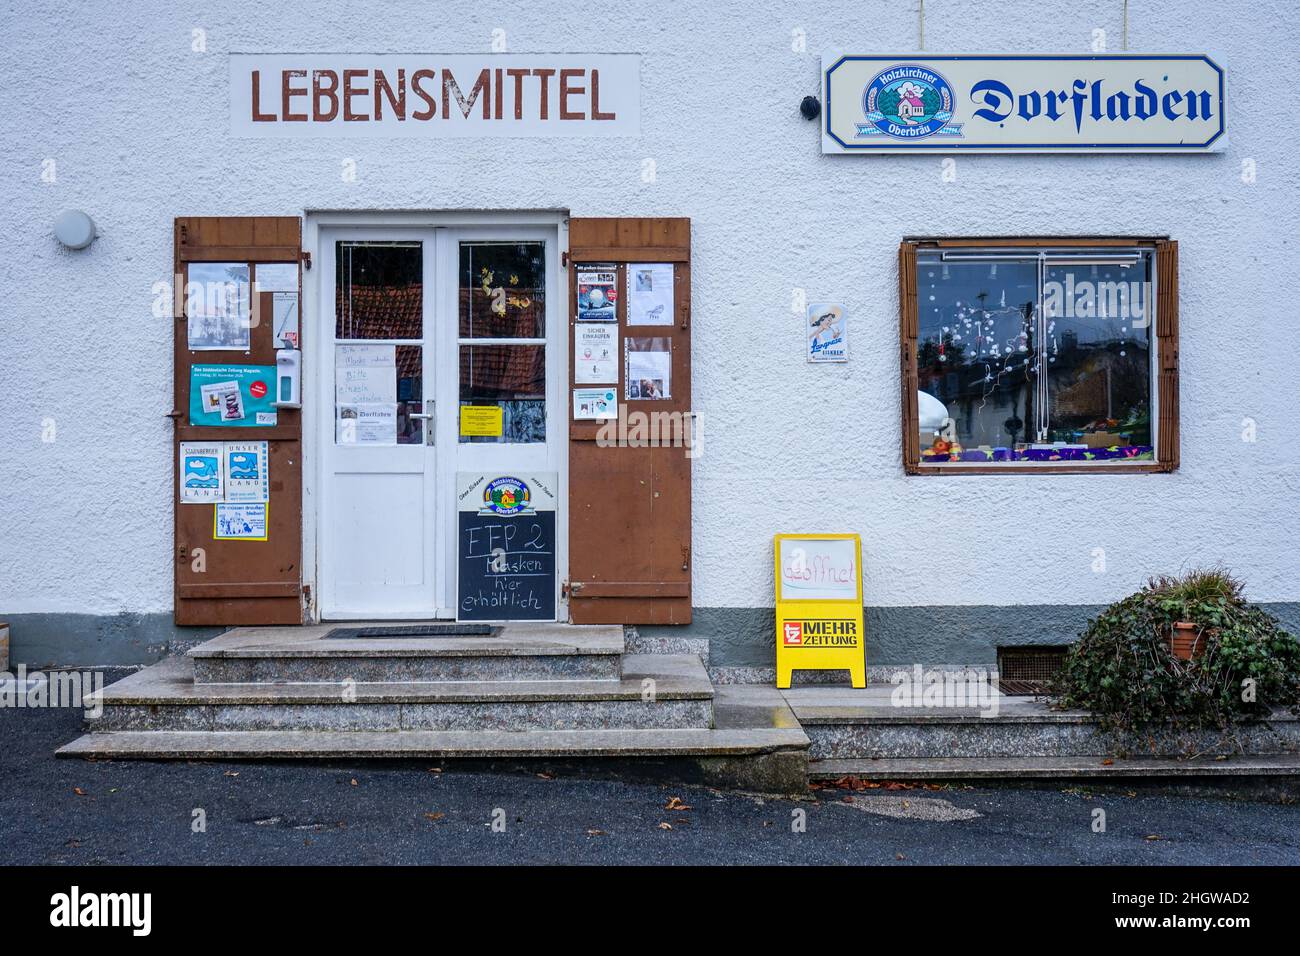 Une petite boutique d'angle dans un village de Wangen, un quartier de Starnberg, en Bavière.Un panneau noir annonce: FFP2 masques disponibles. Banque D'Images